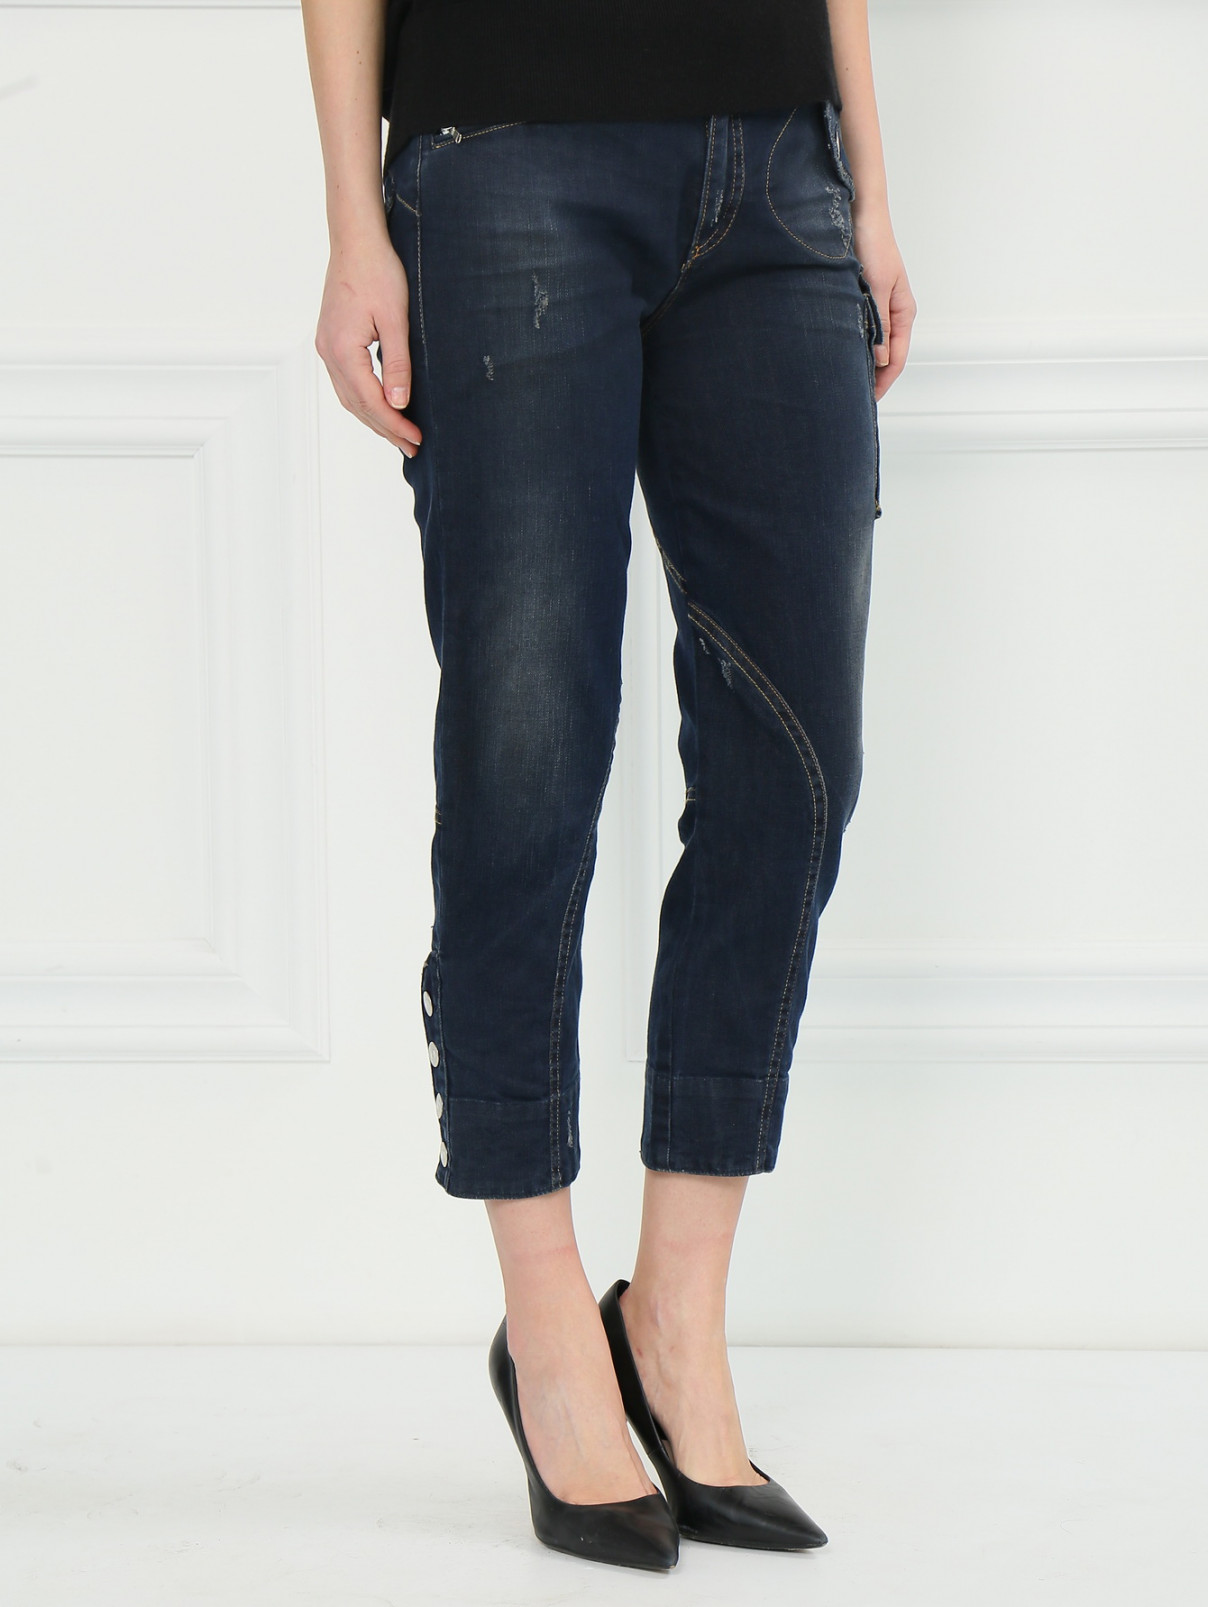 Укороченные джинсы с накладными карманами MC Alexander McQueen  –  Модель Верх-Низ  – Цвет:  Синий